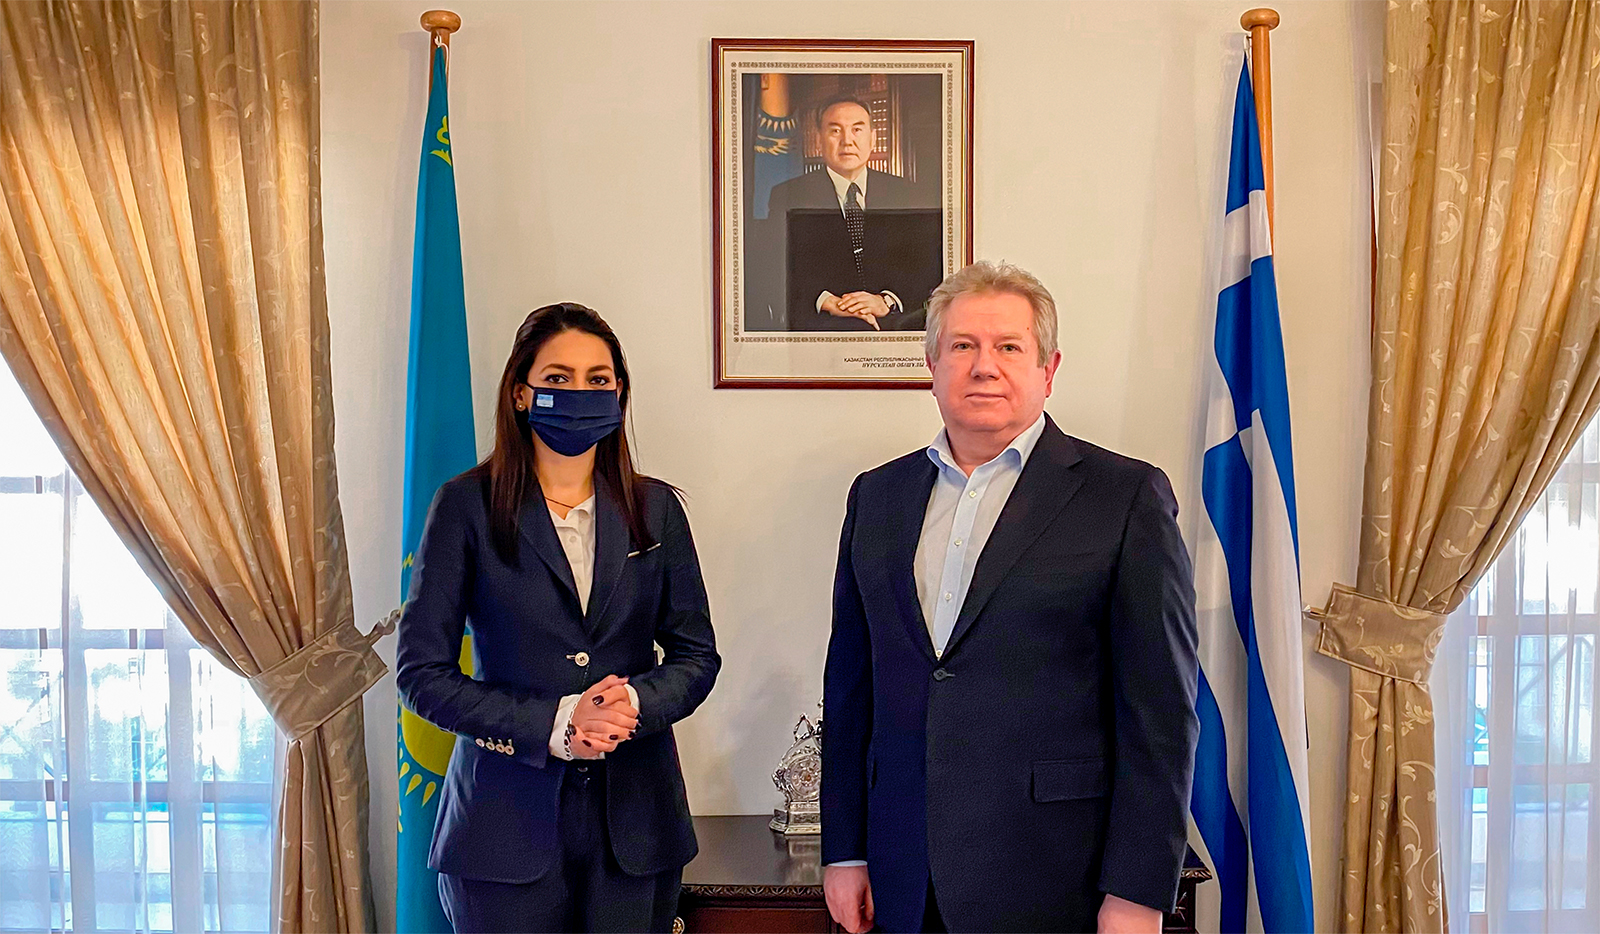 Έλληνίδα βουλευτής με ρίζες από το Καζακστάν υποστήριξε τις προσπάθειες ανάπτυξης σχέσεων Καζακστάν-Ελλάδας